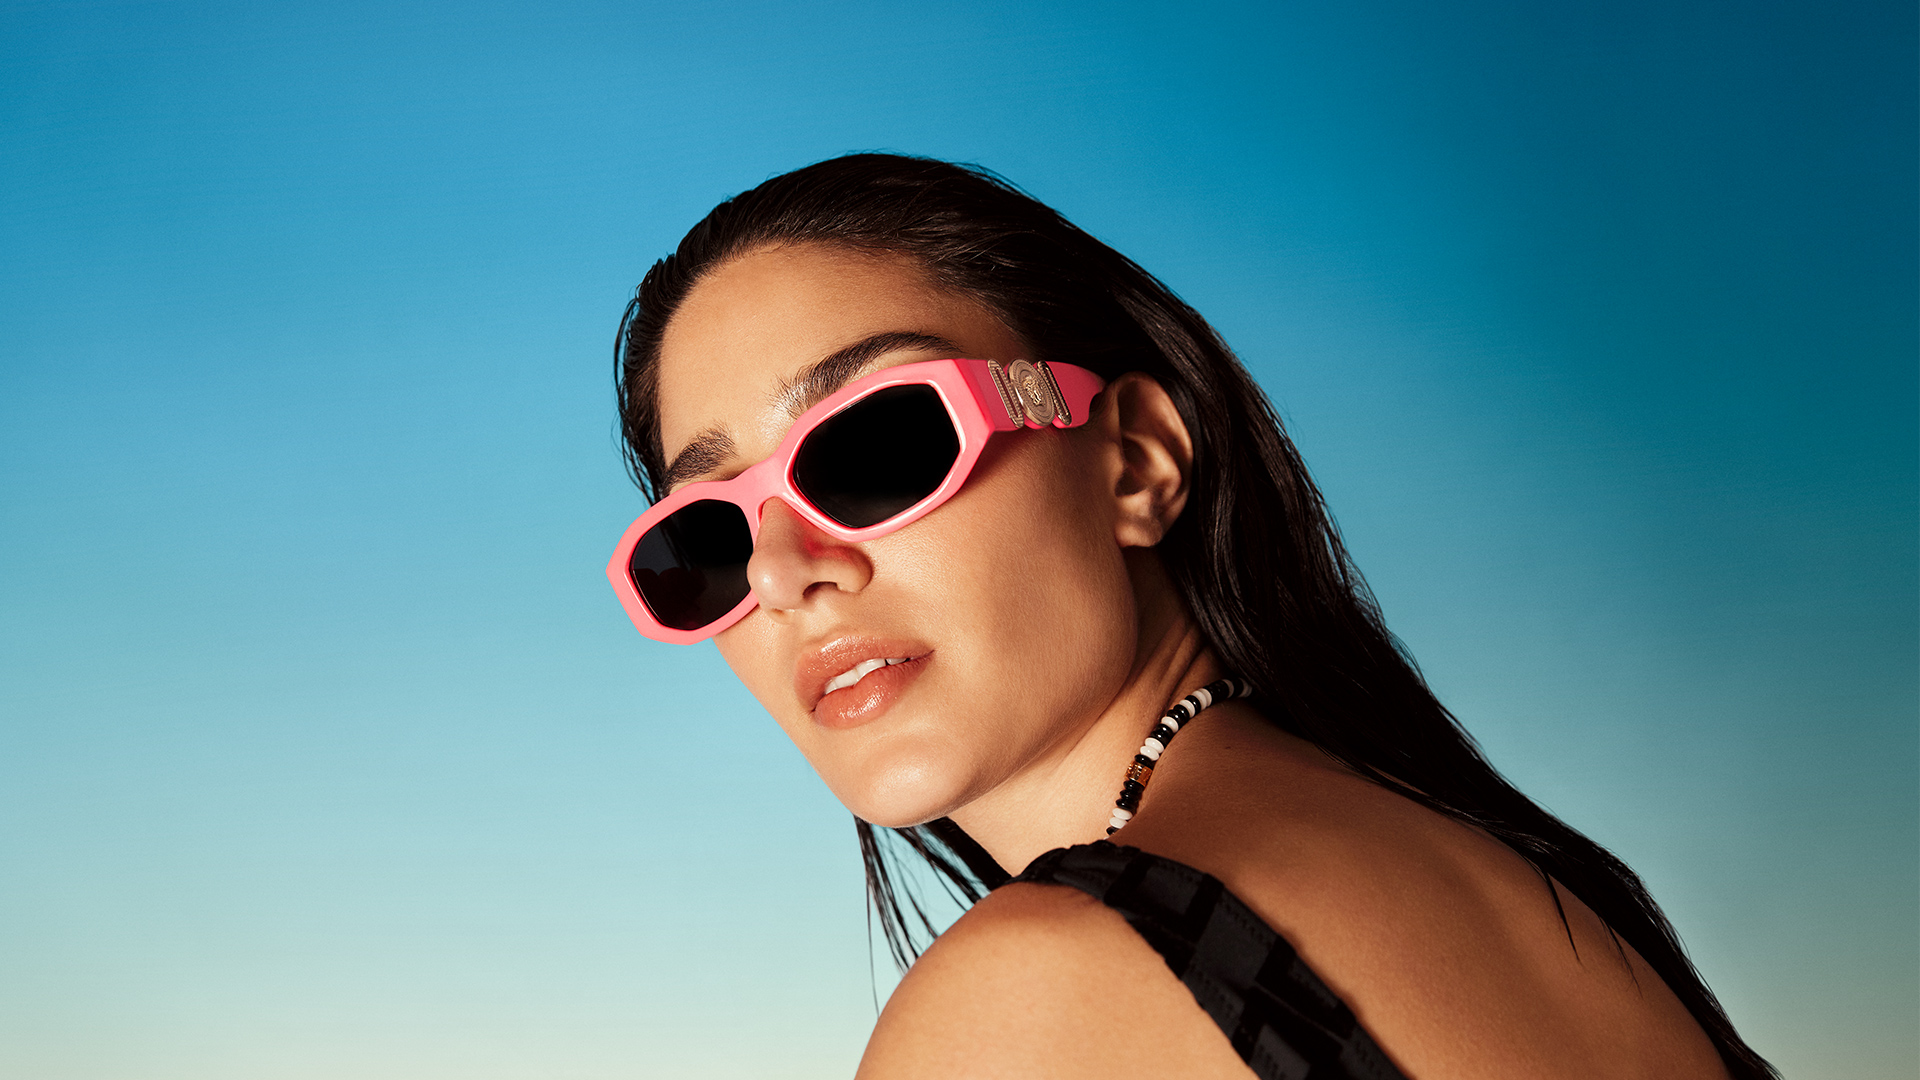 Zalando Premium Sunglasses | Rok Trzan | Zalando | Interview Magazine | Nina Hollensteiner | Numerique Retouch Photo Retouching Studio